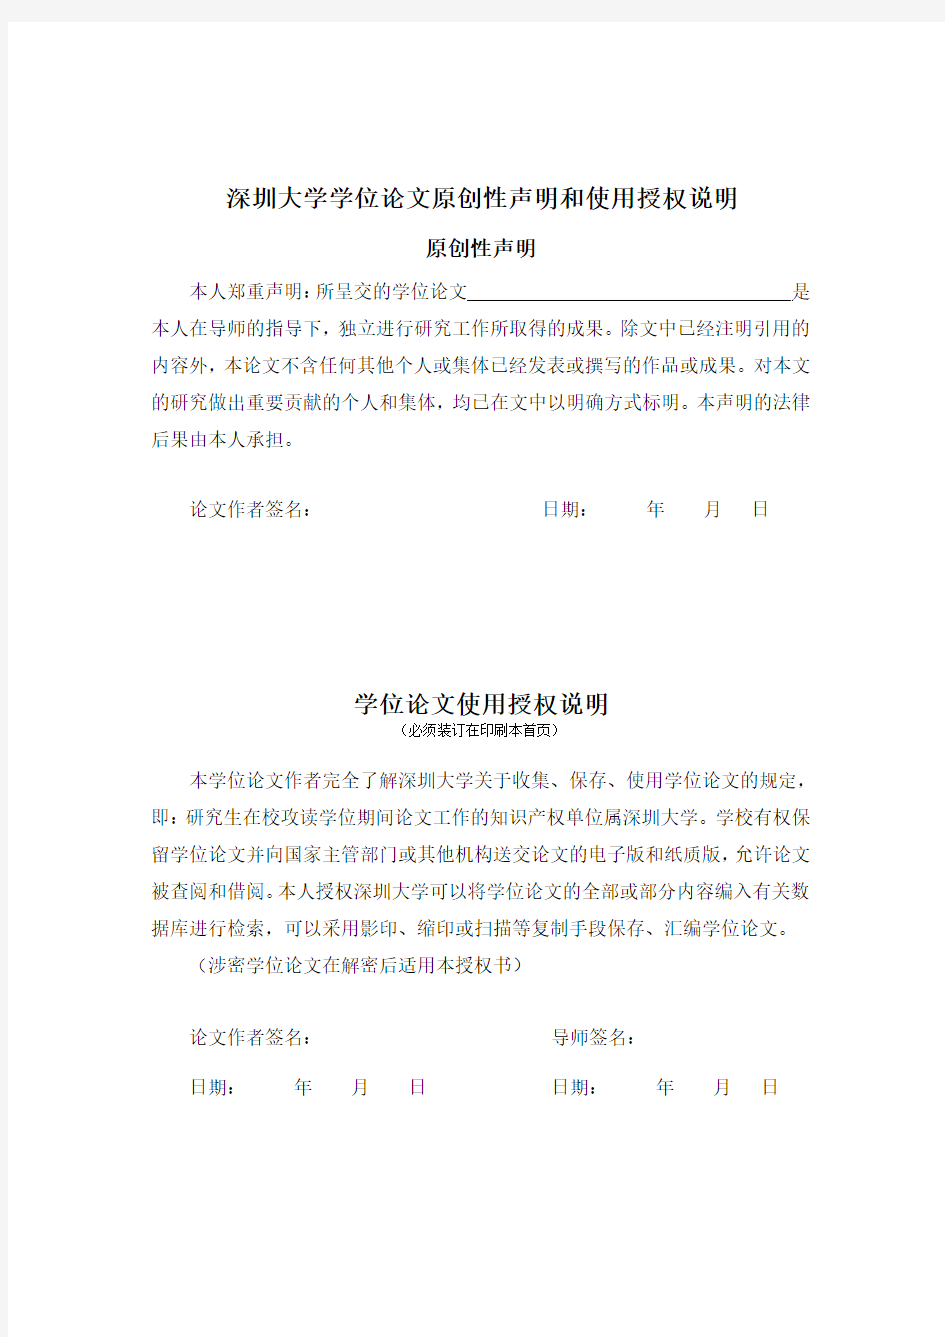 2016年深圳大学学术硕士学位论文印刷格式样式